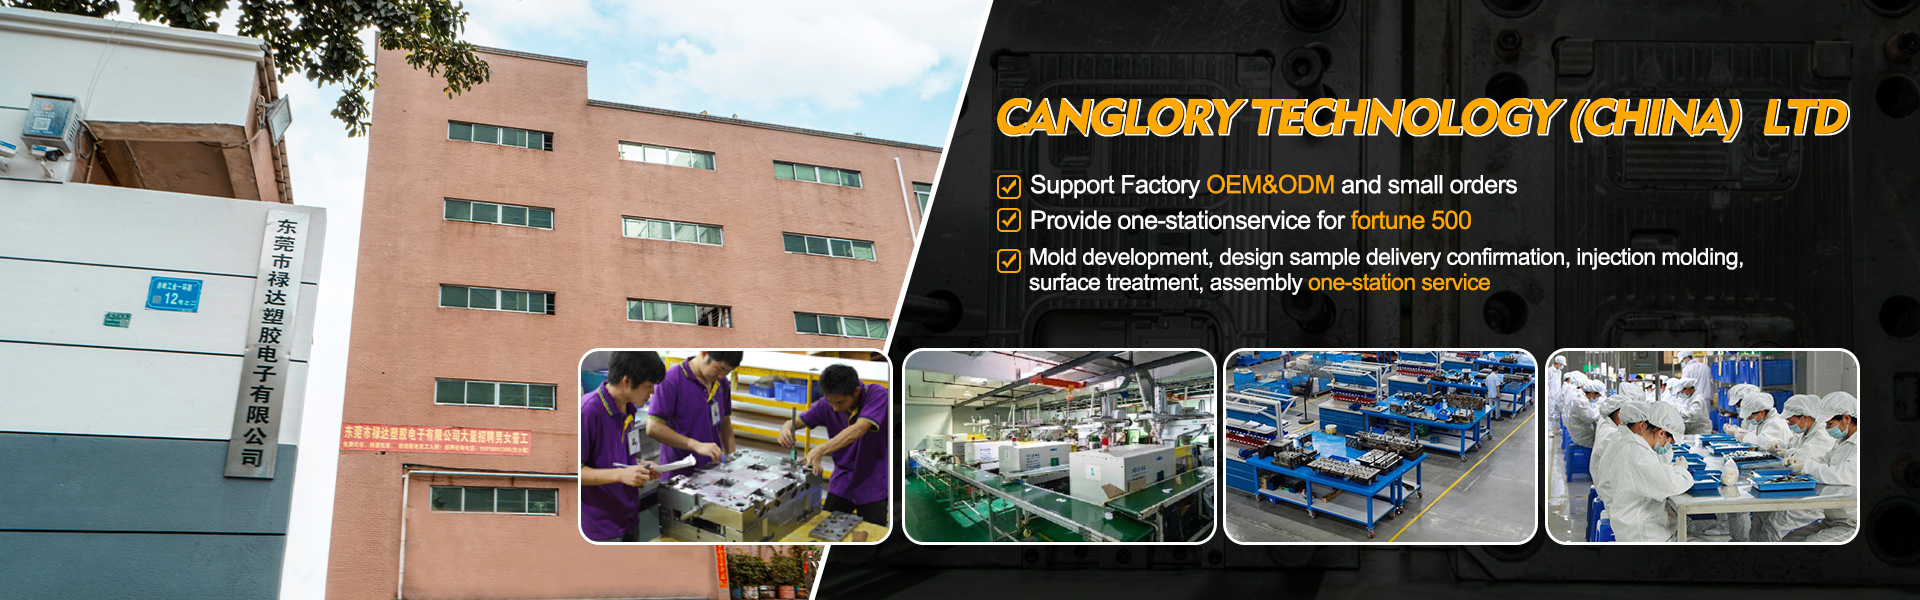 Canglory technology (China)  LTD